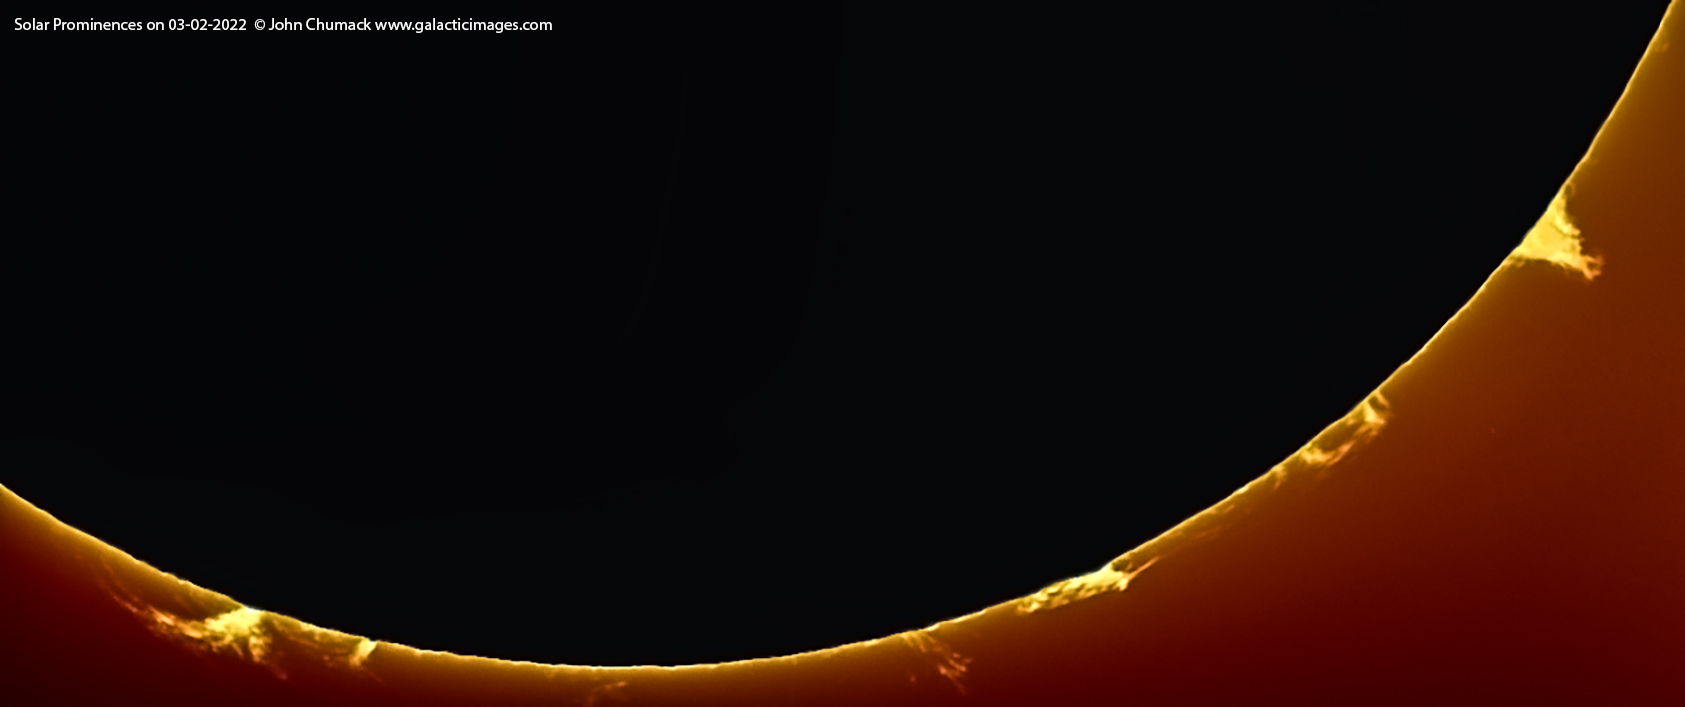 Solar Prominences on 03-02-2022